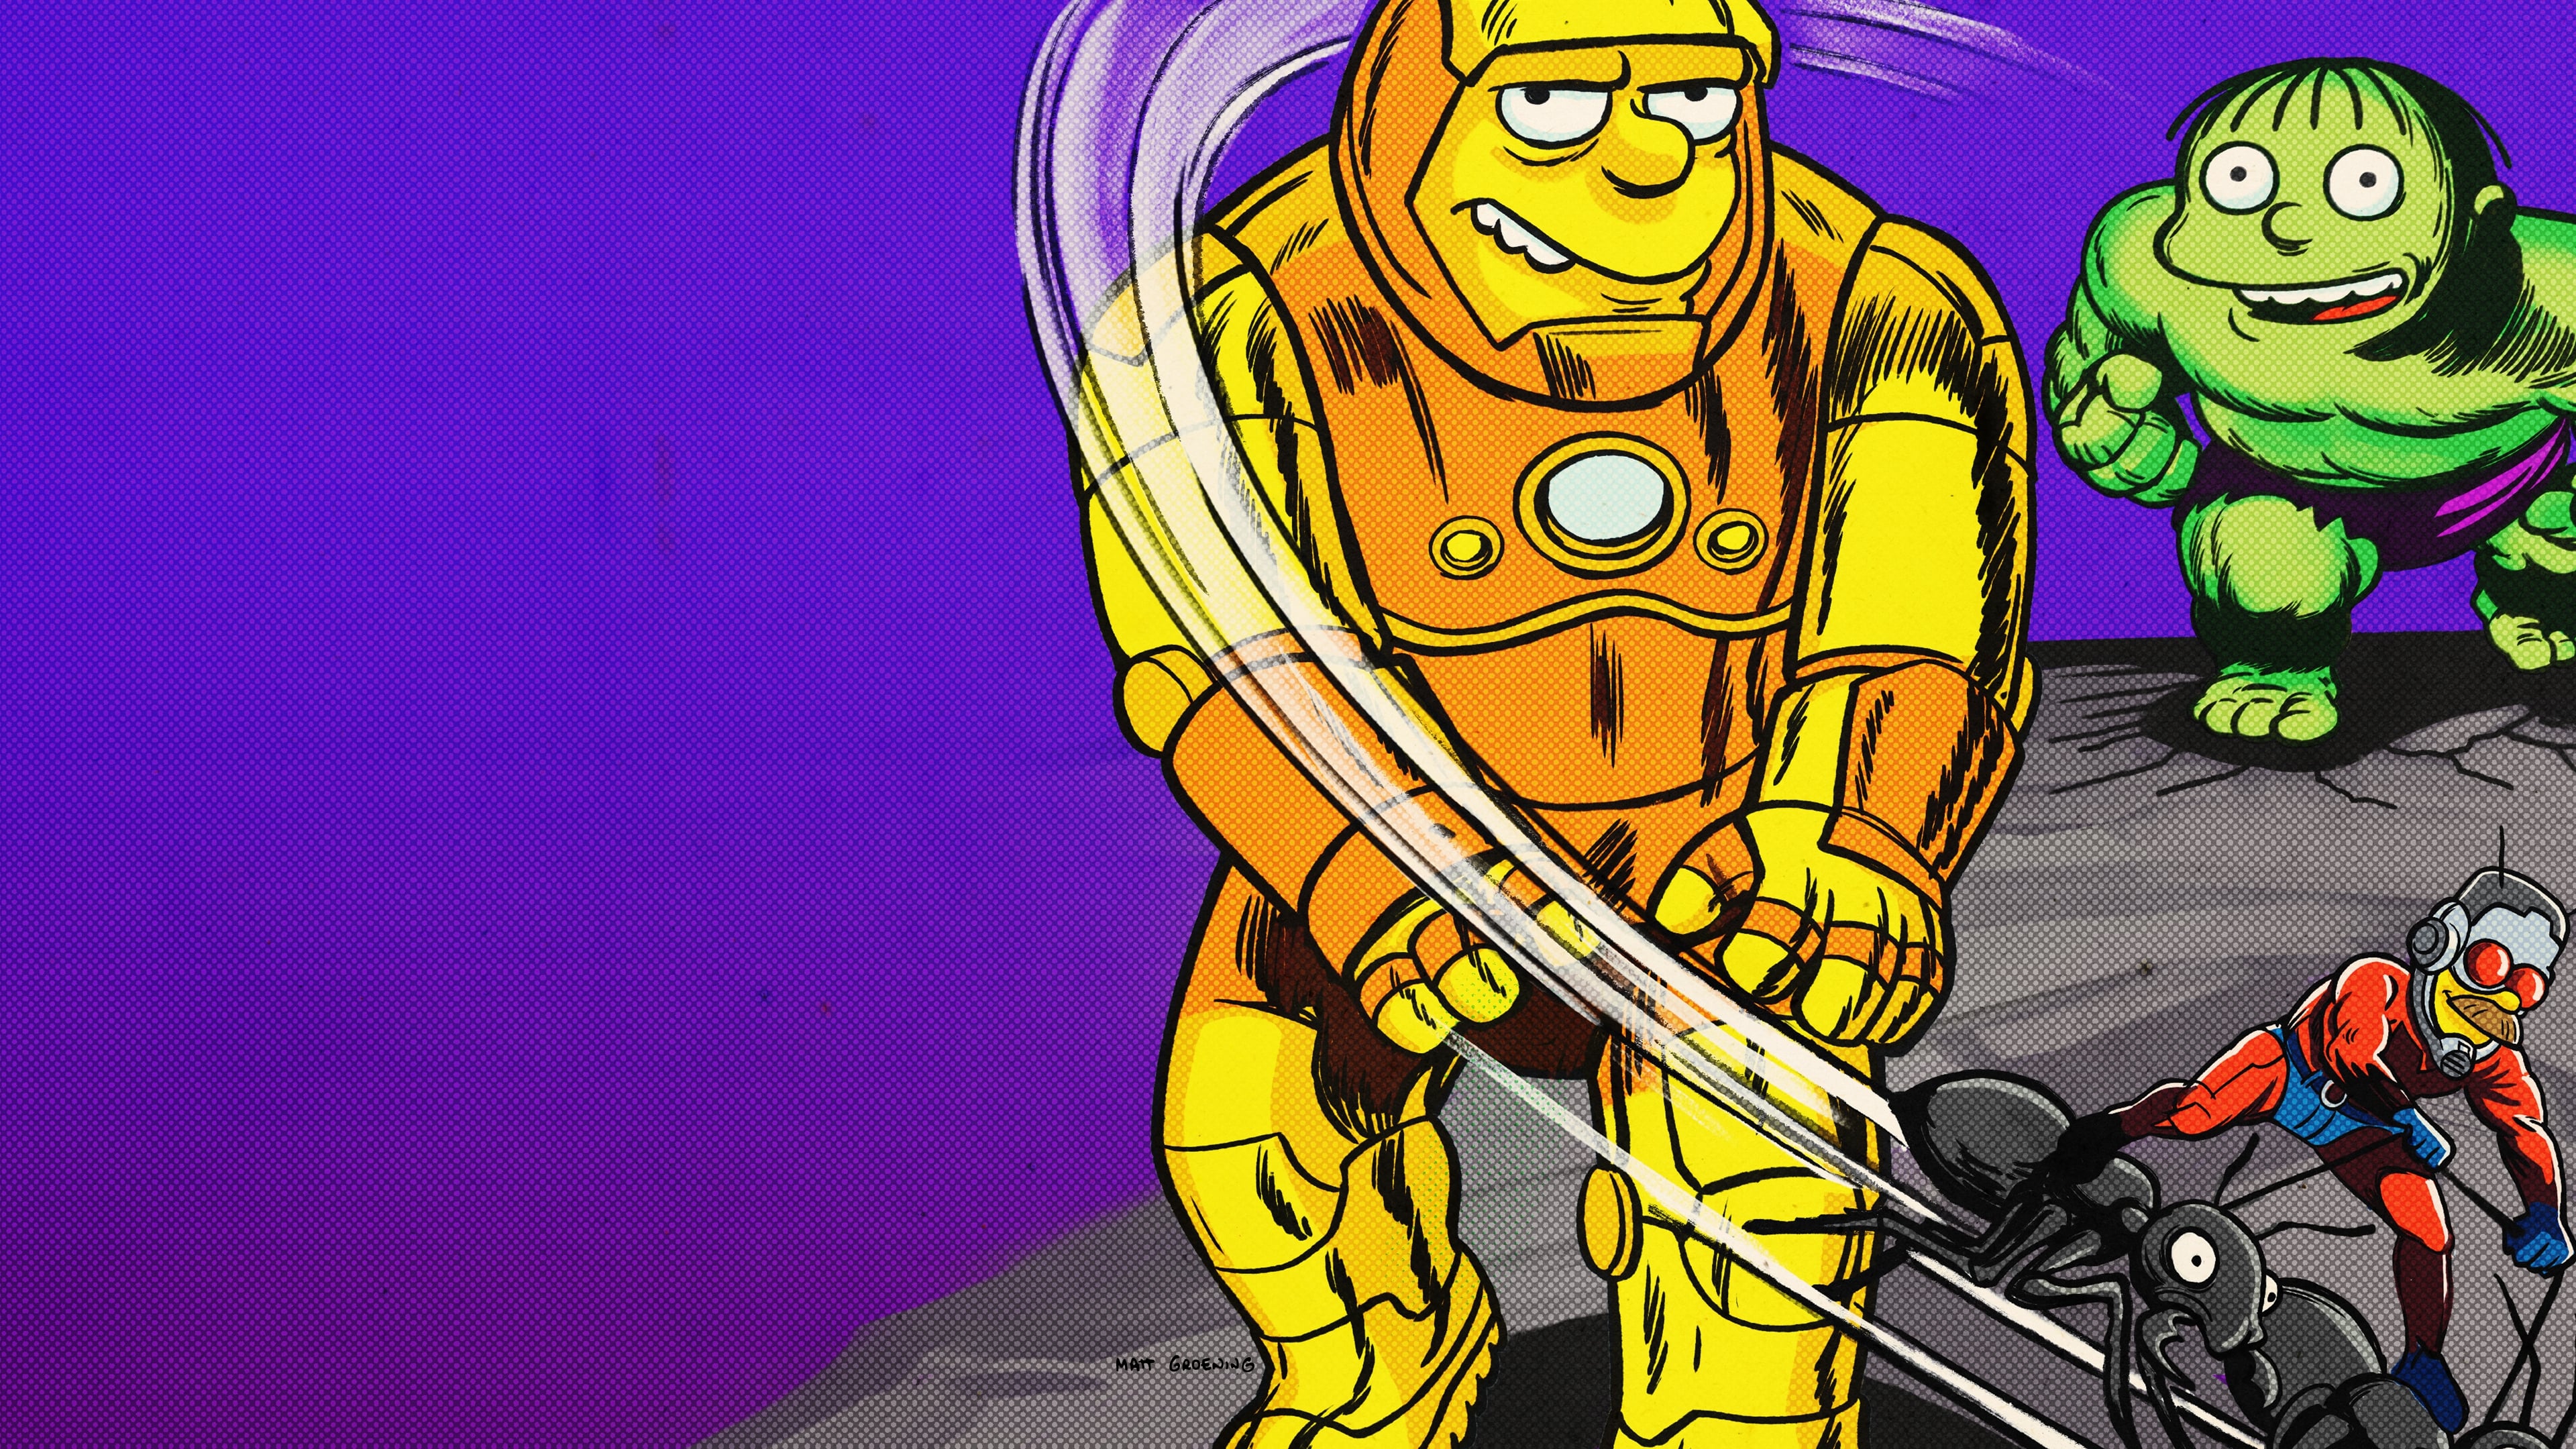 Les Simpson: Le Bon, le Bart et le Loki (2021)